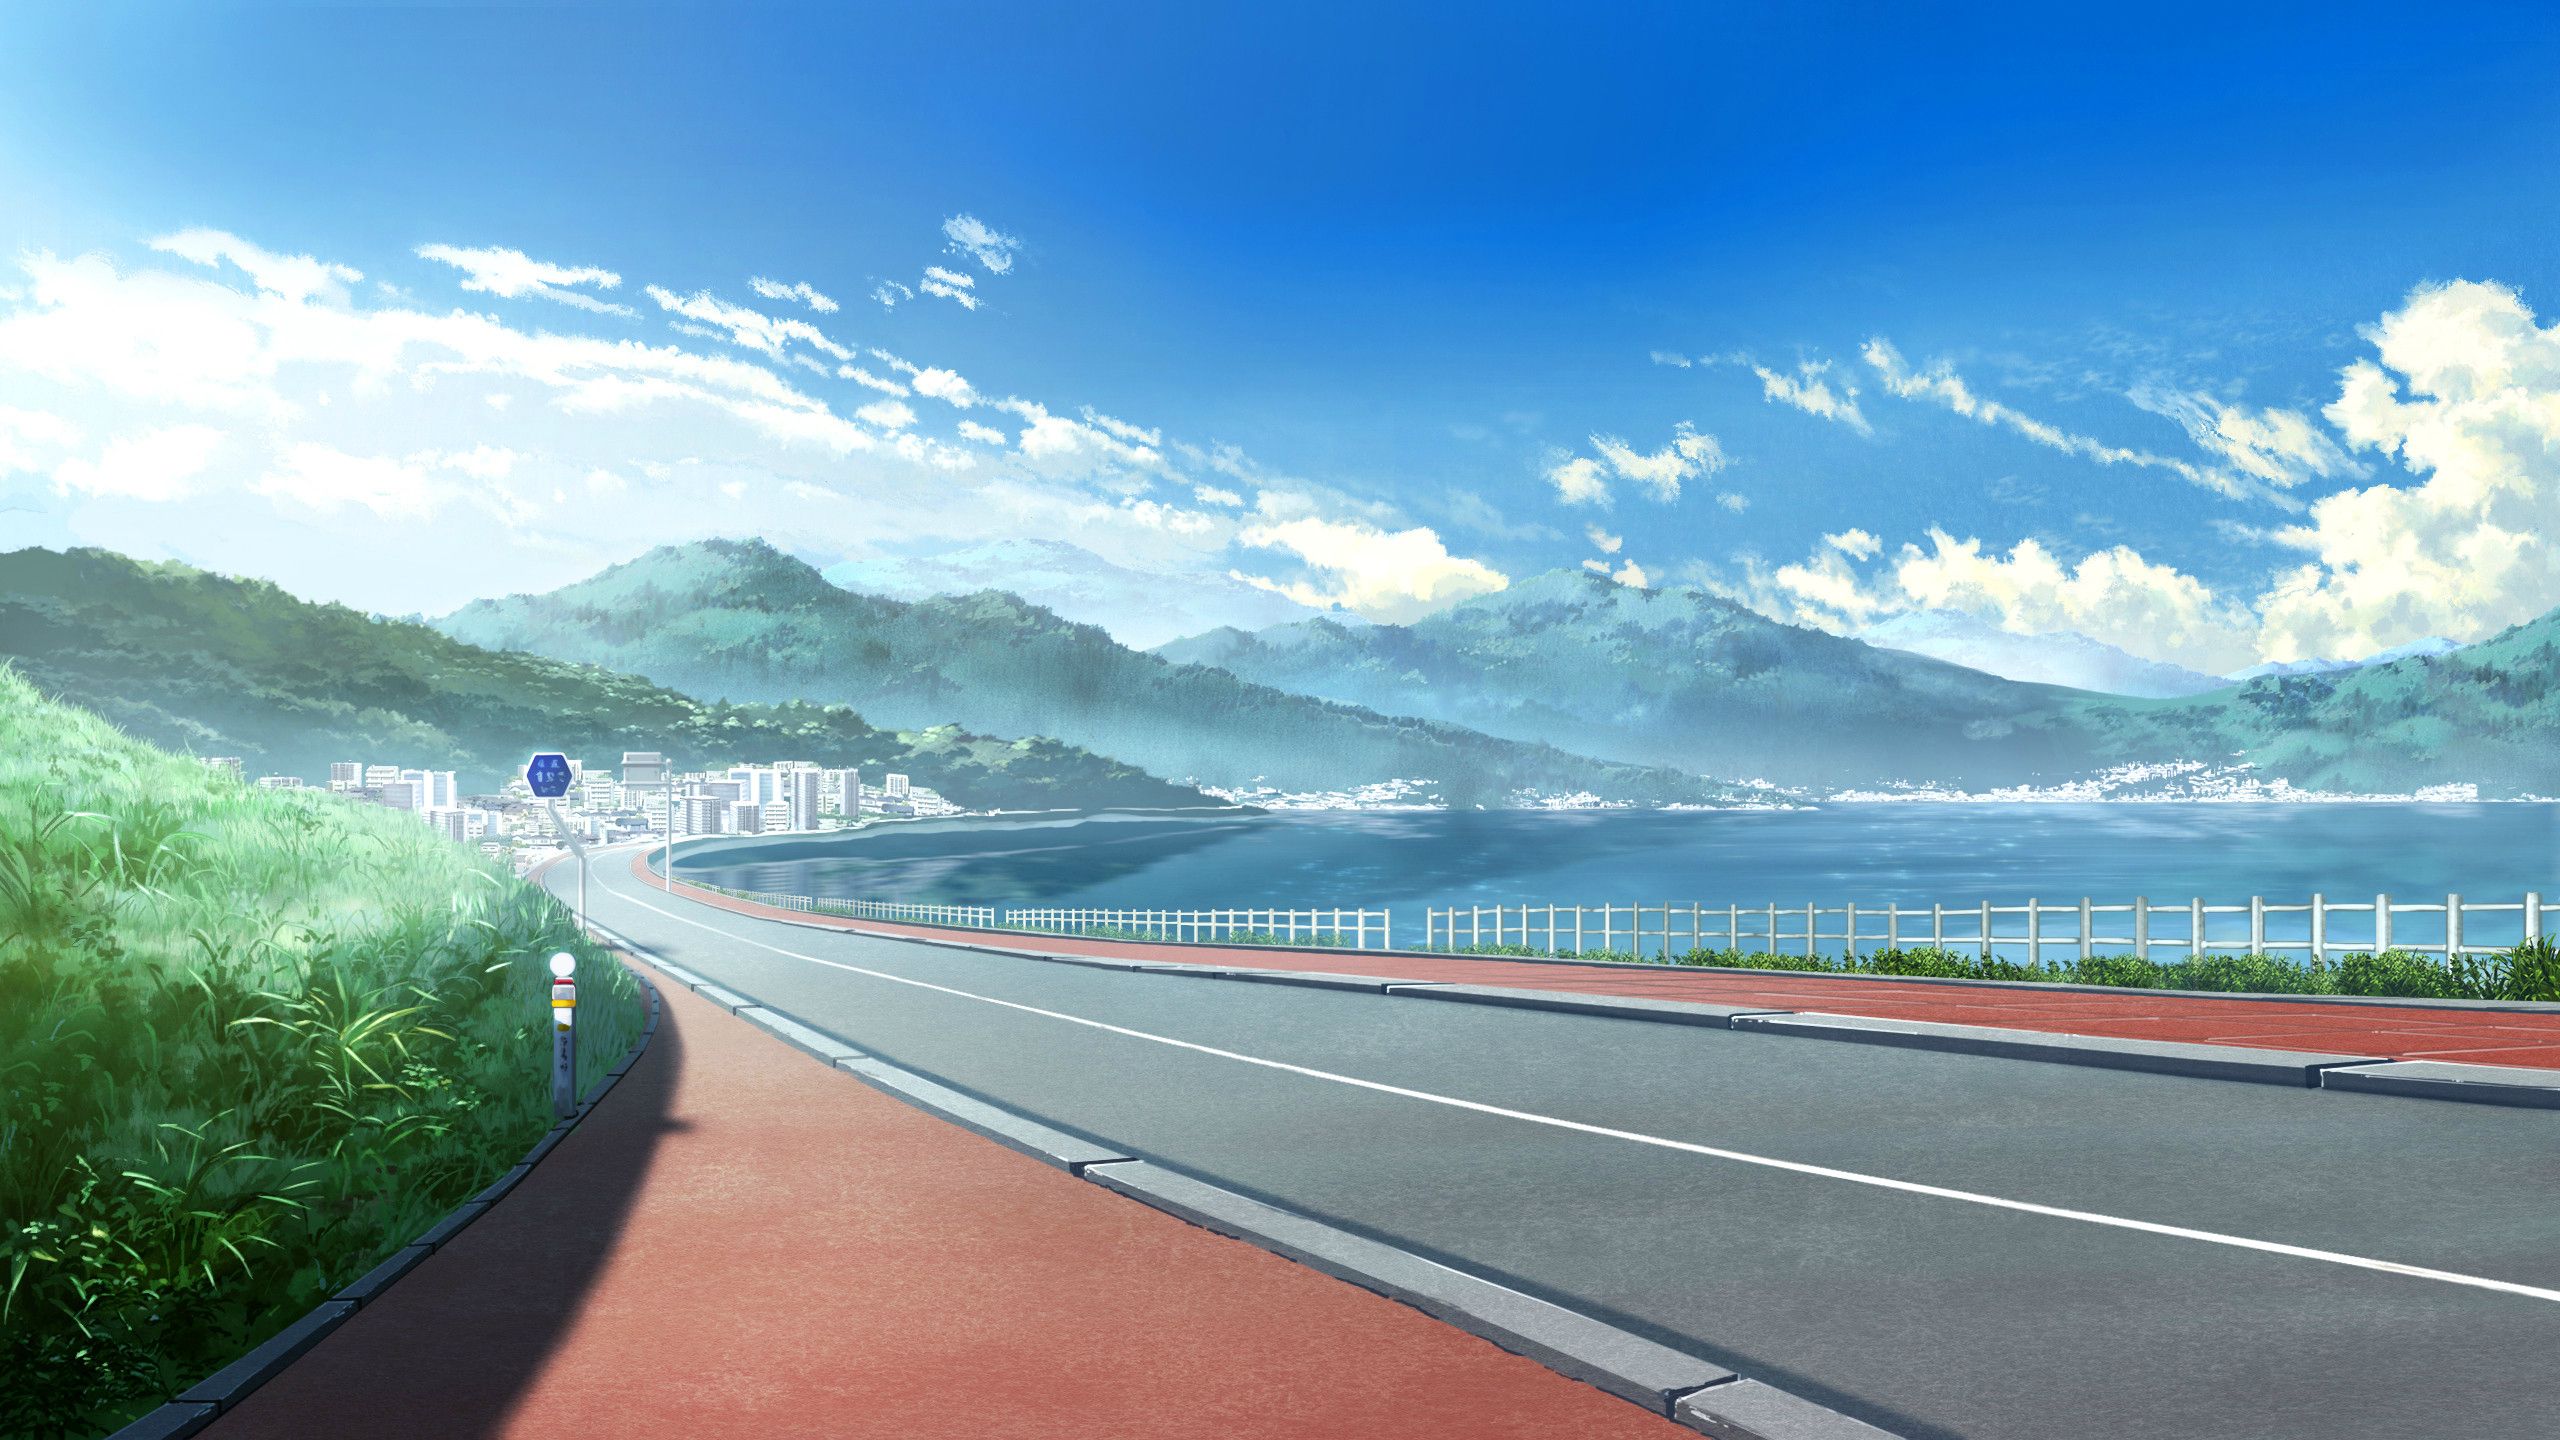 Desktop Images Anime Backgrounds - Anime Landscape - HD Wallpaper 